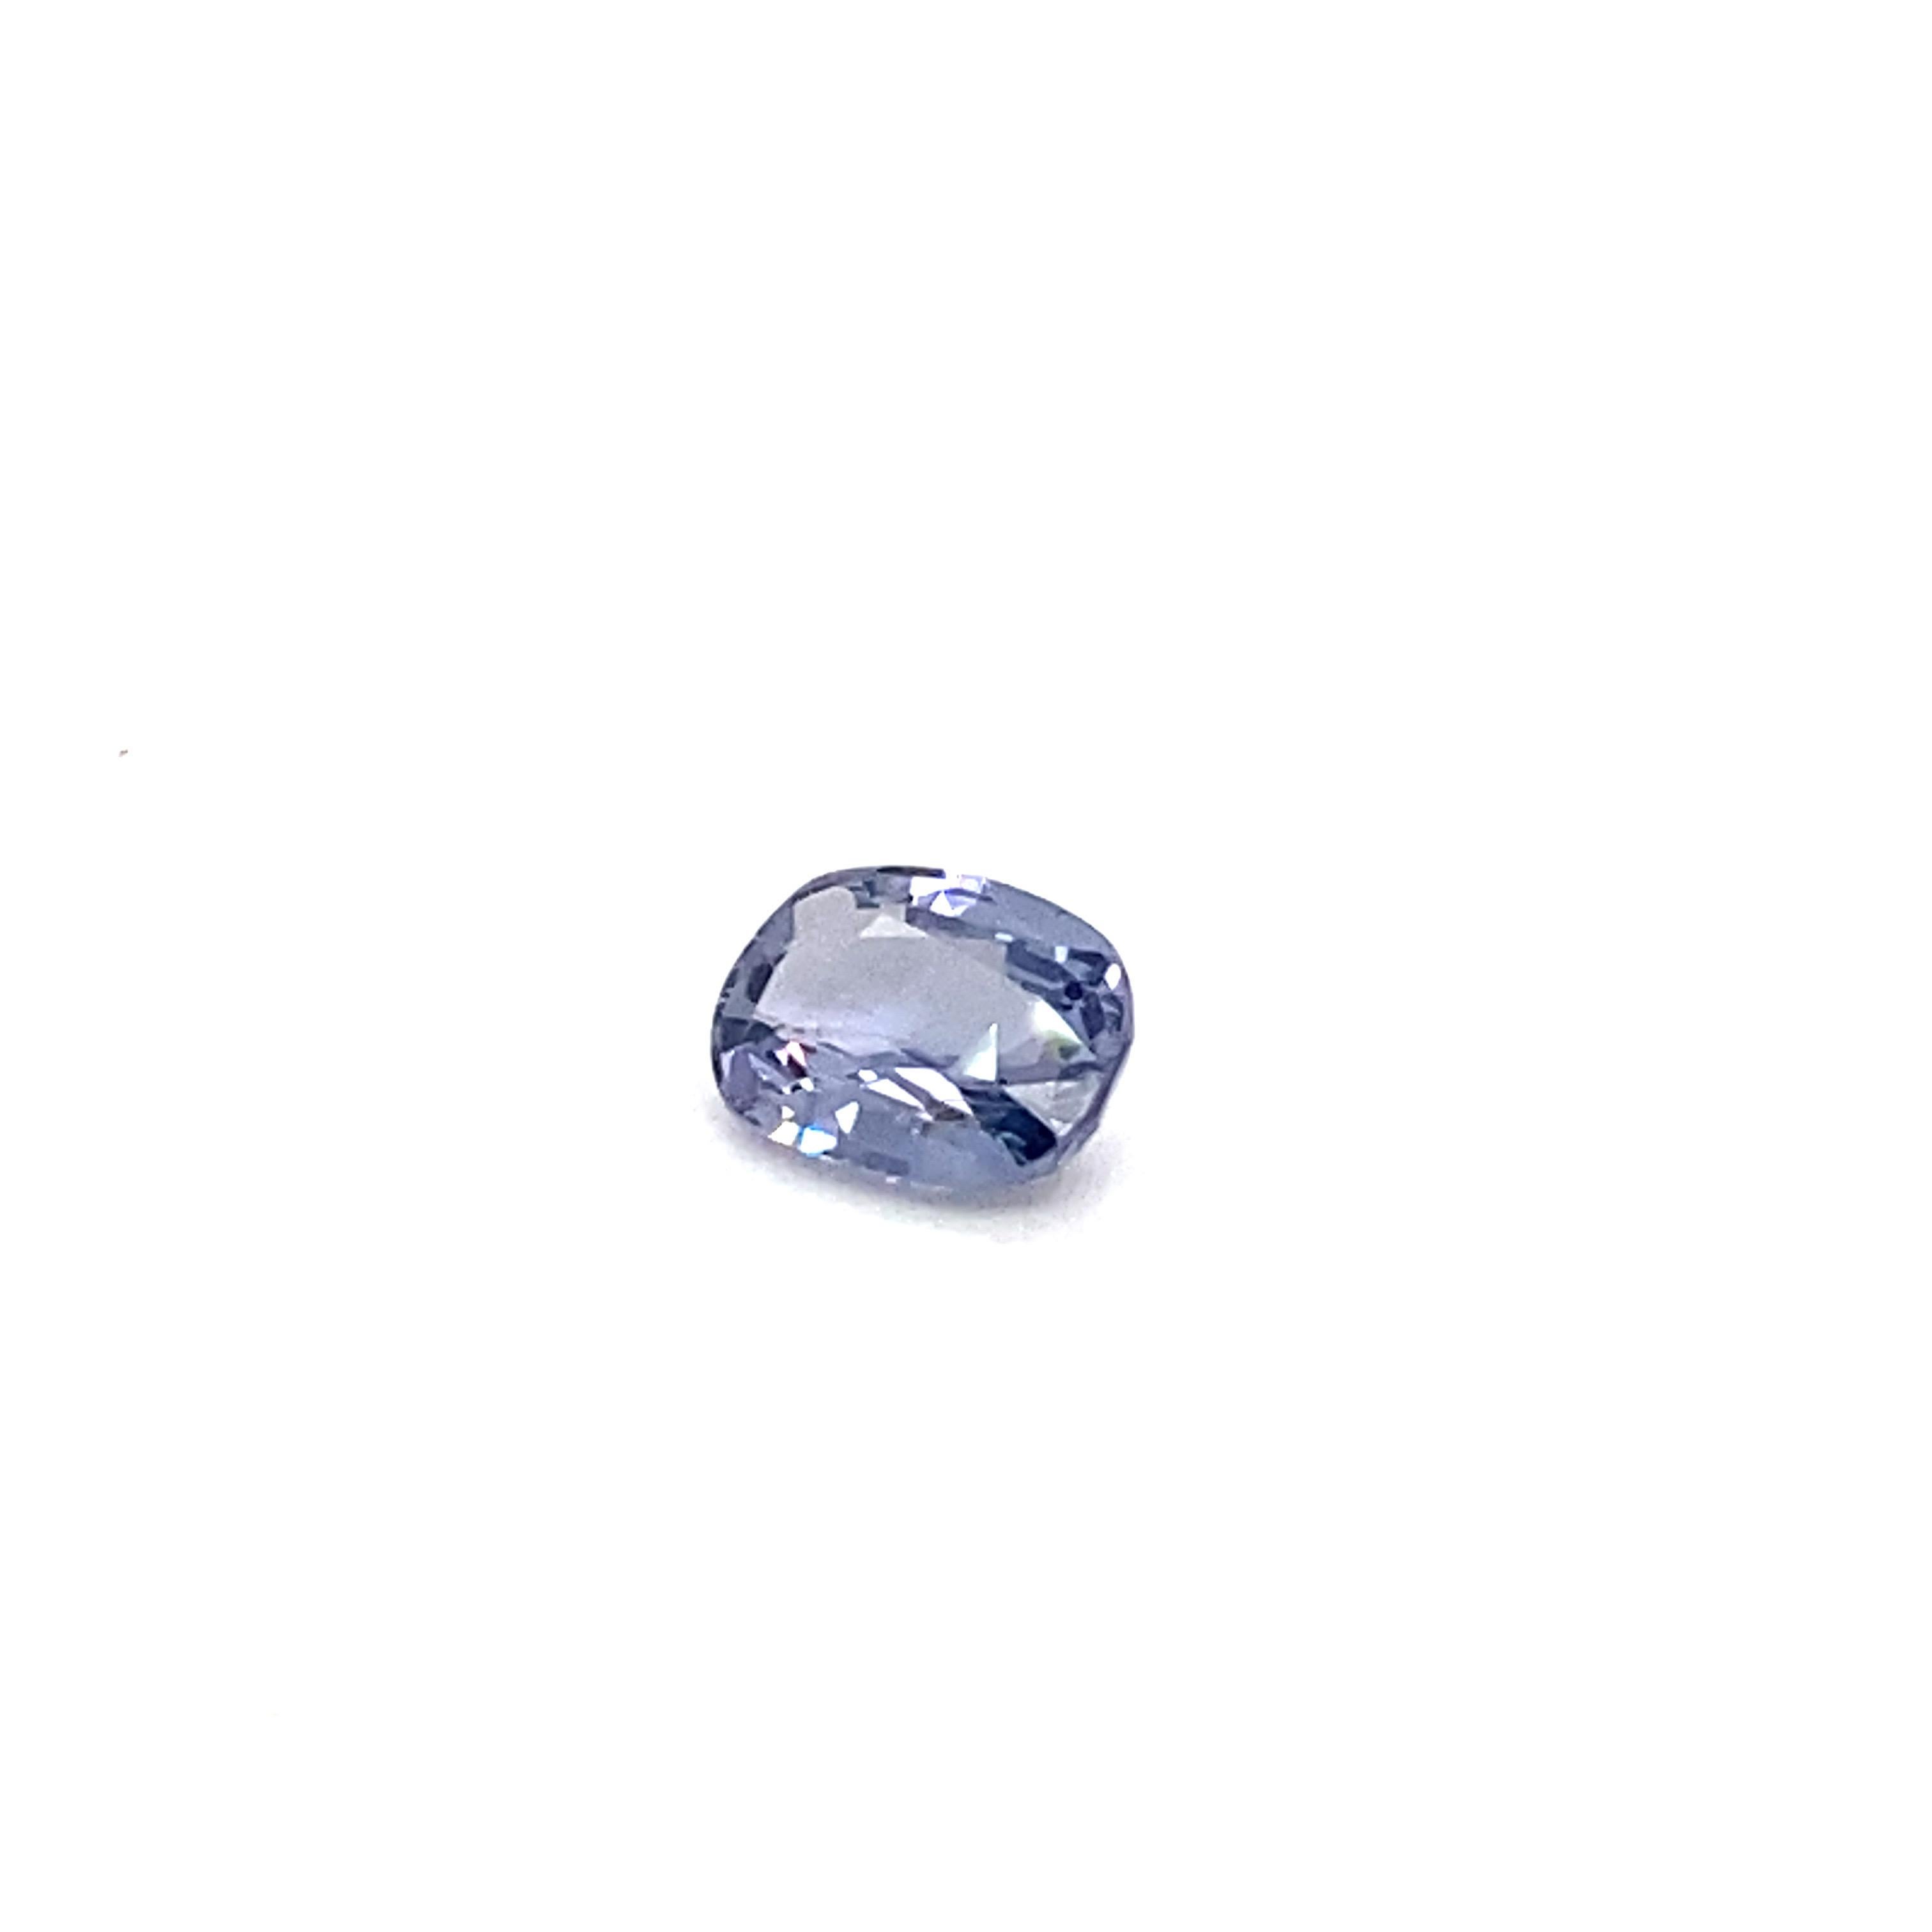 1.6 Carat Oval Shape Natural Violet Spinel Loose Gemstone For Sale 6